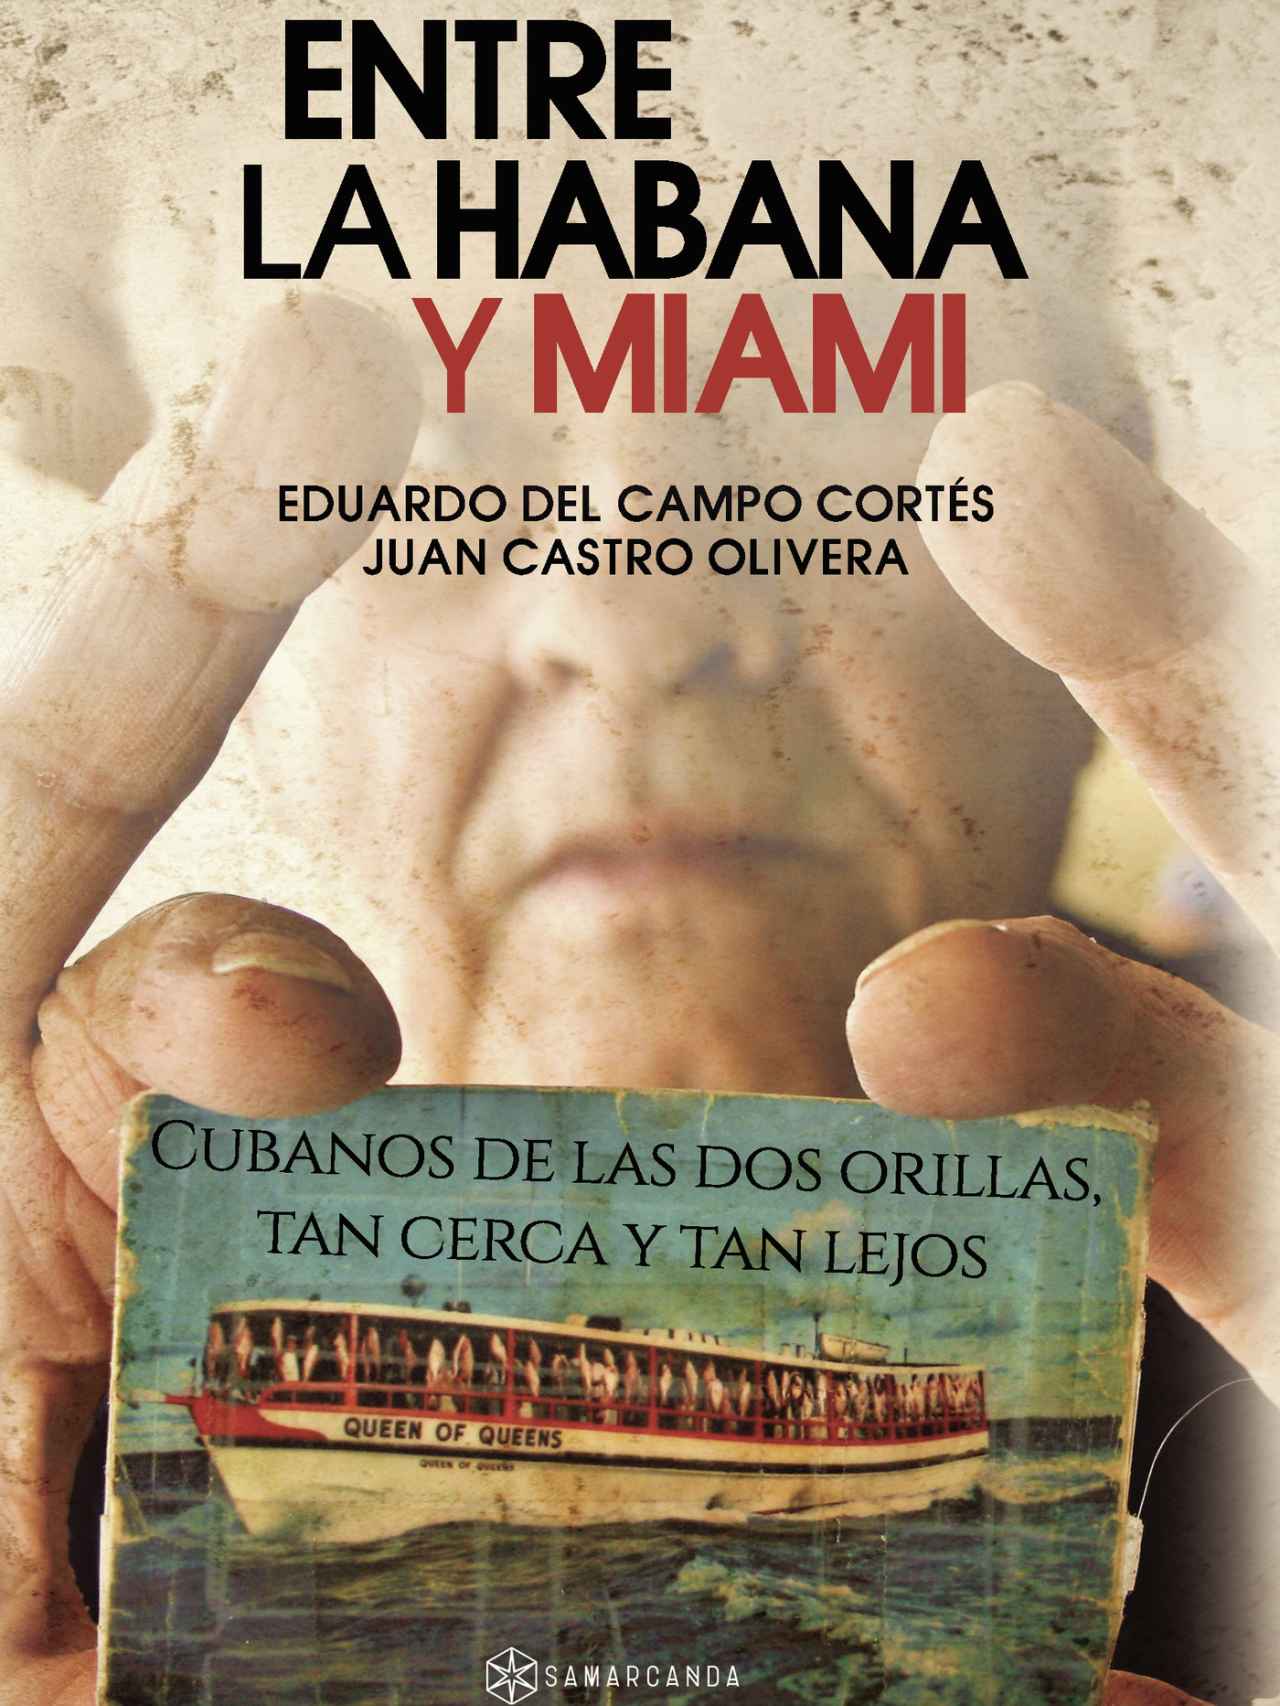 Portada del libro 'Entre La Habana y Miami', publicado por la editorial Samarcanda.